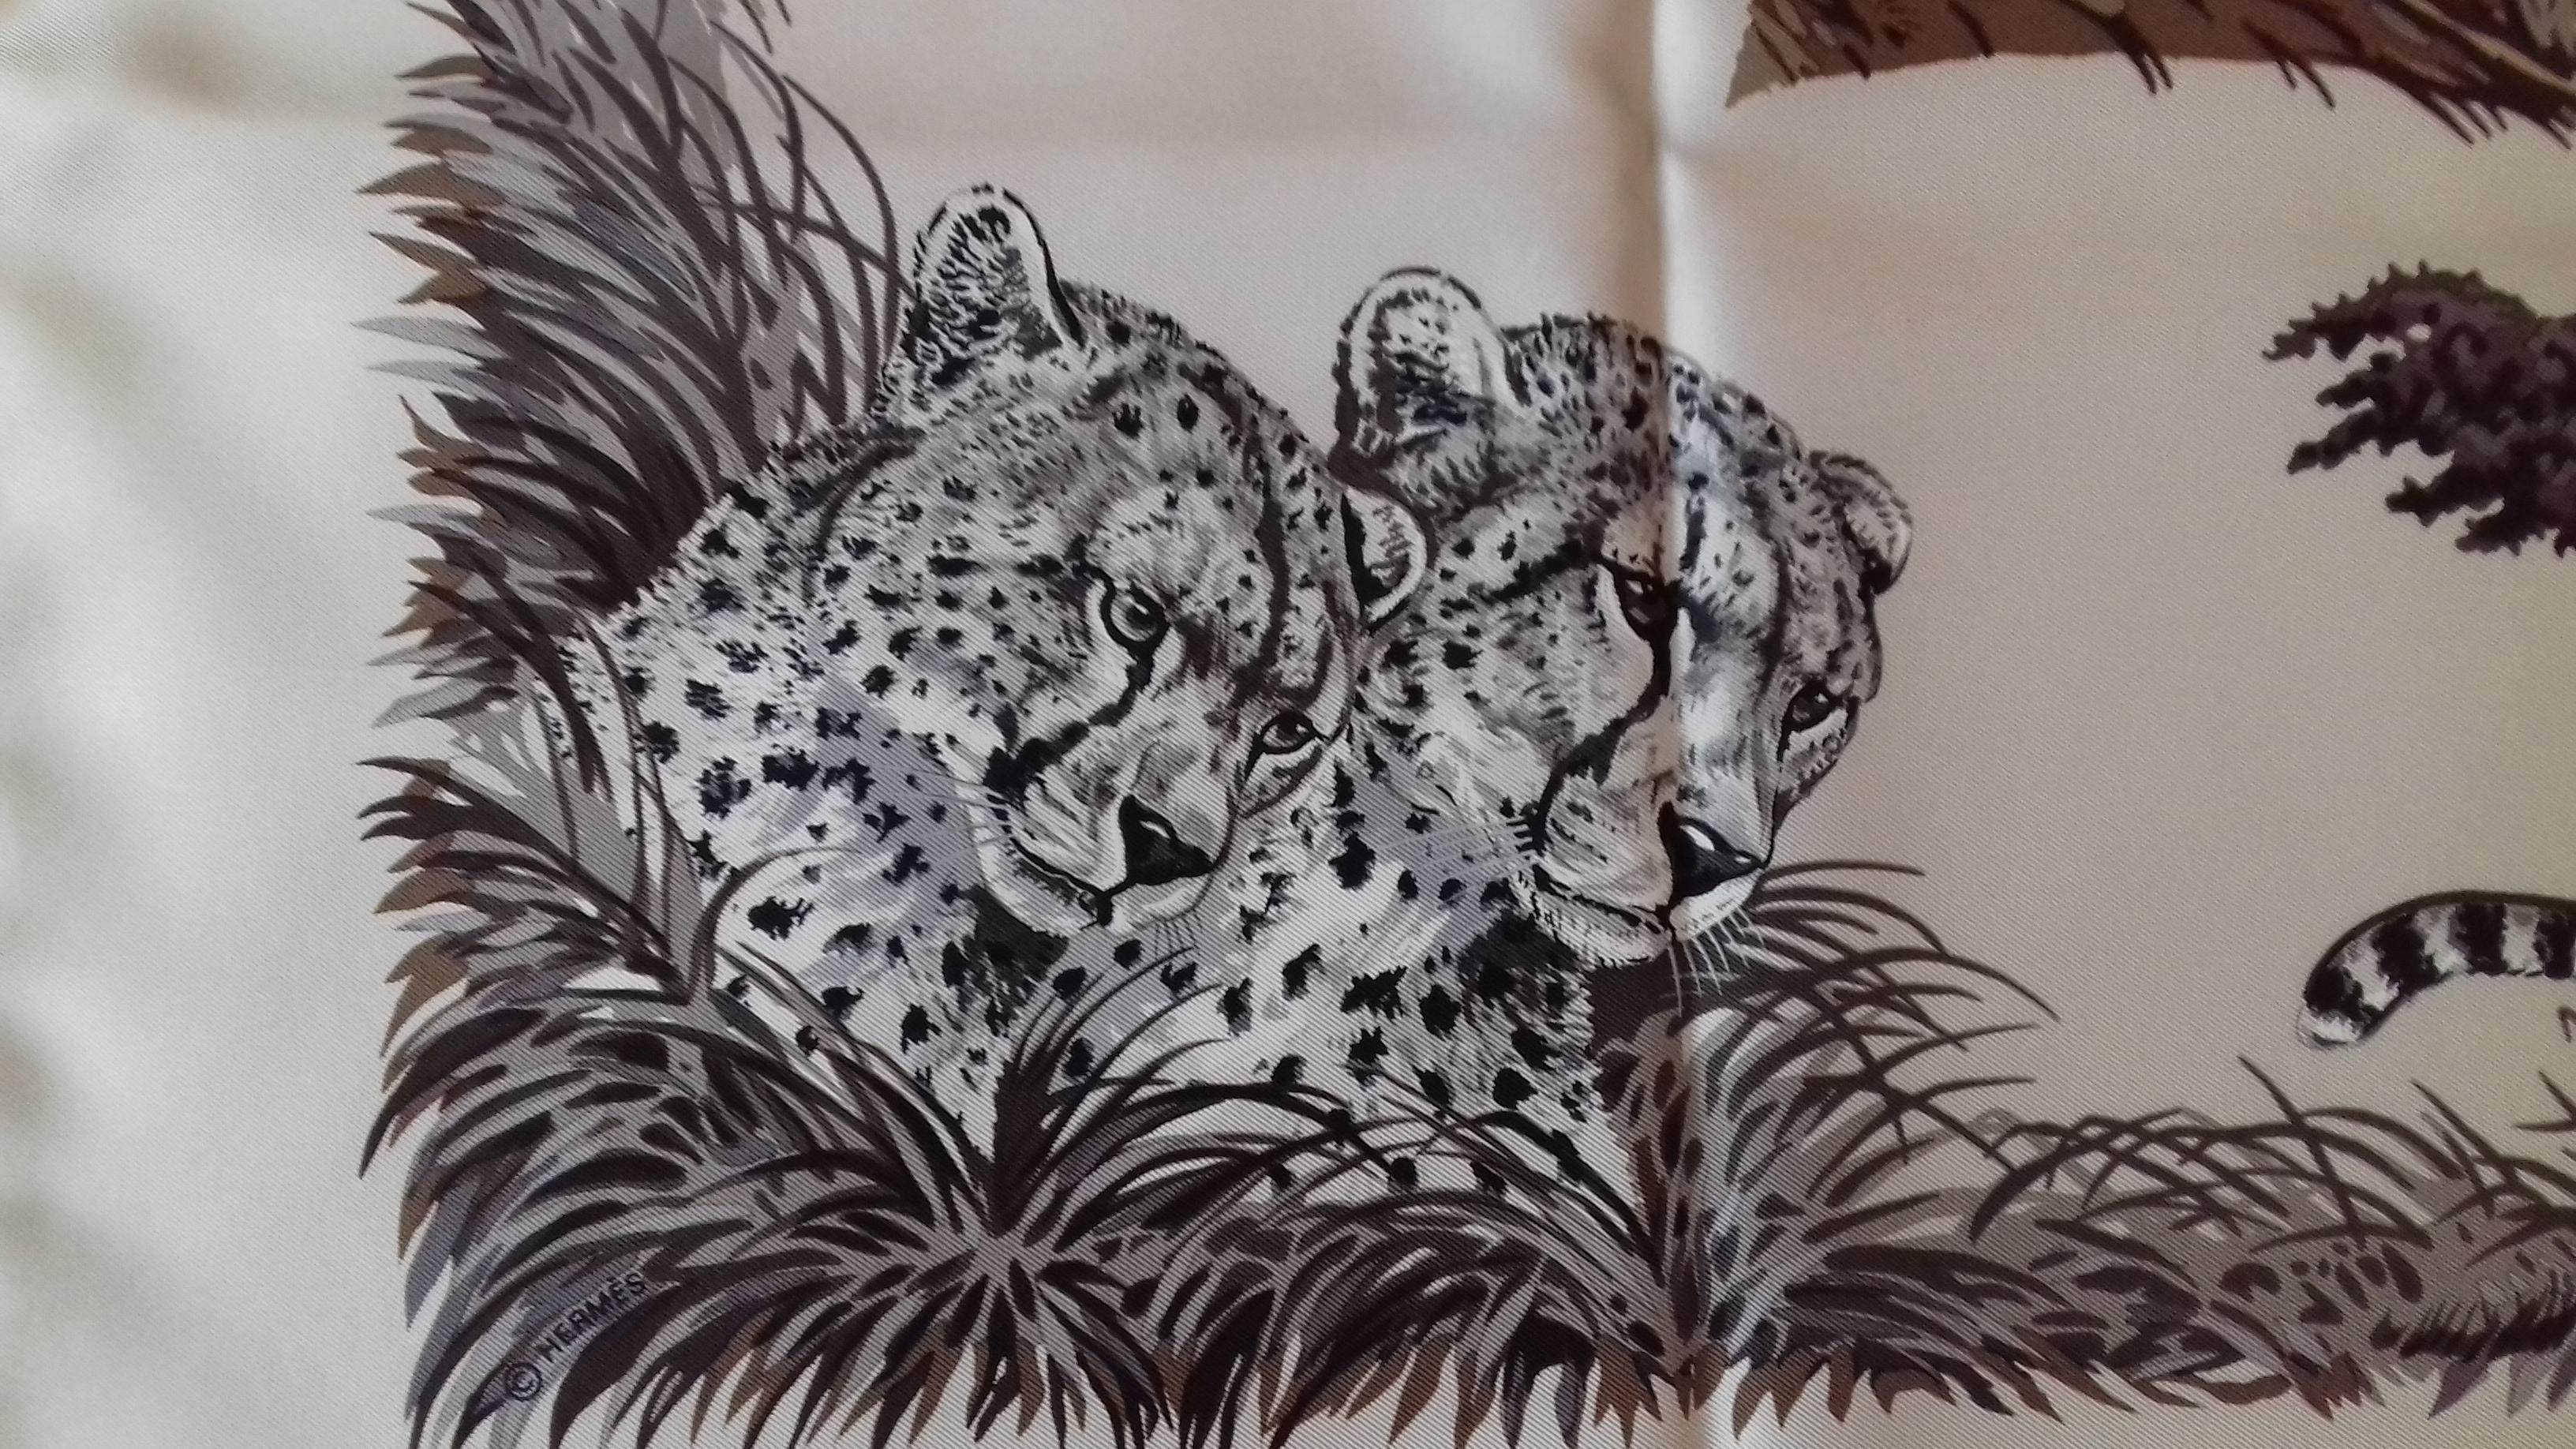 Hermès Silk Scarf Guépards Cheetahs Robert Dallet Beige Gray Brown 90 cm 1